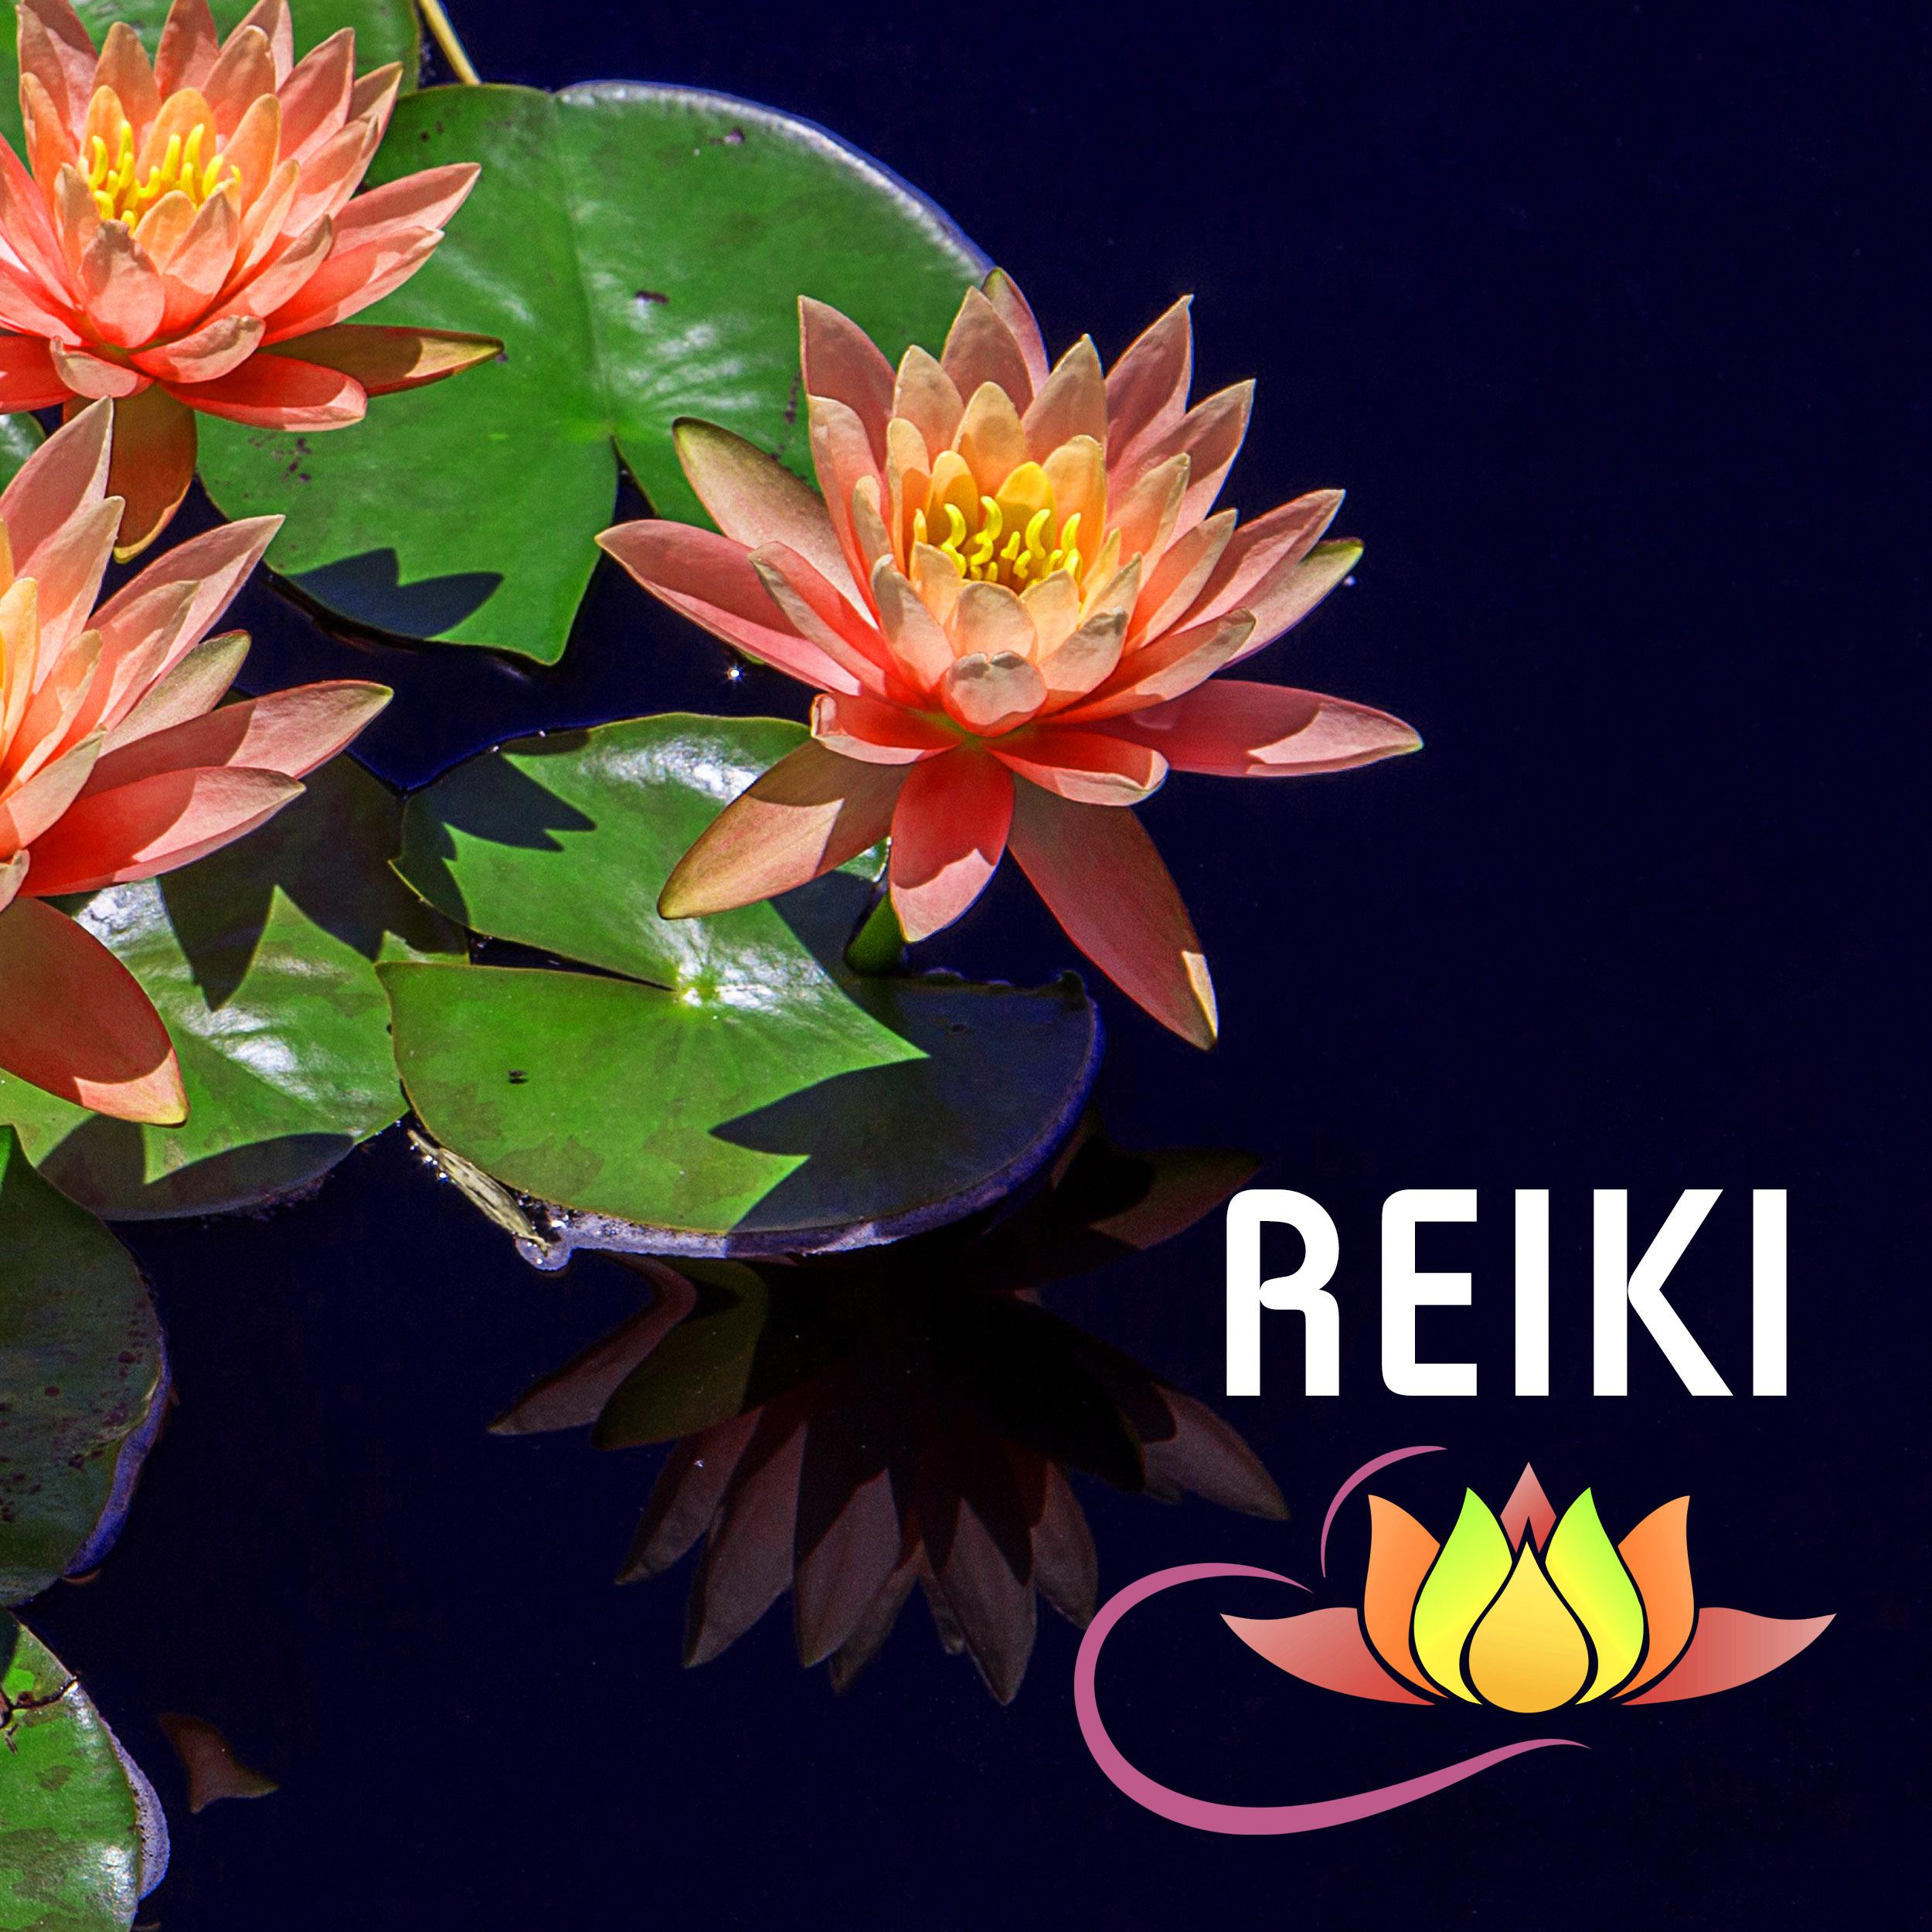 Reiki - Musica de Spa para Masajes Relajantes, Acupuntura, Medicina Holistica y Sanar el Alma